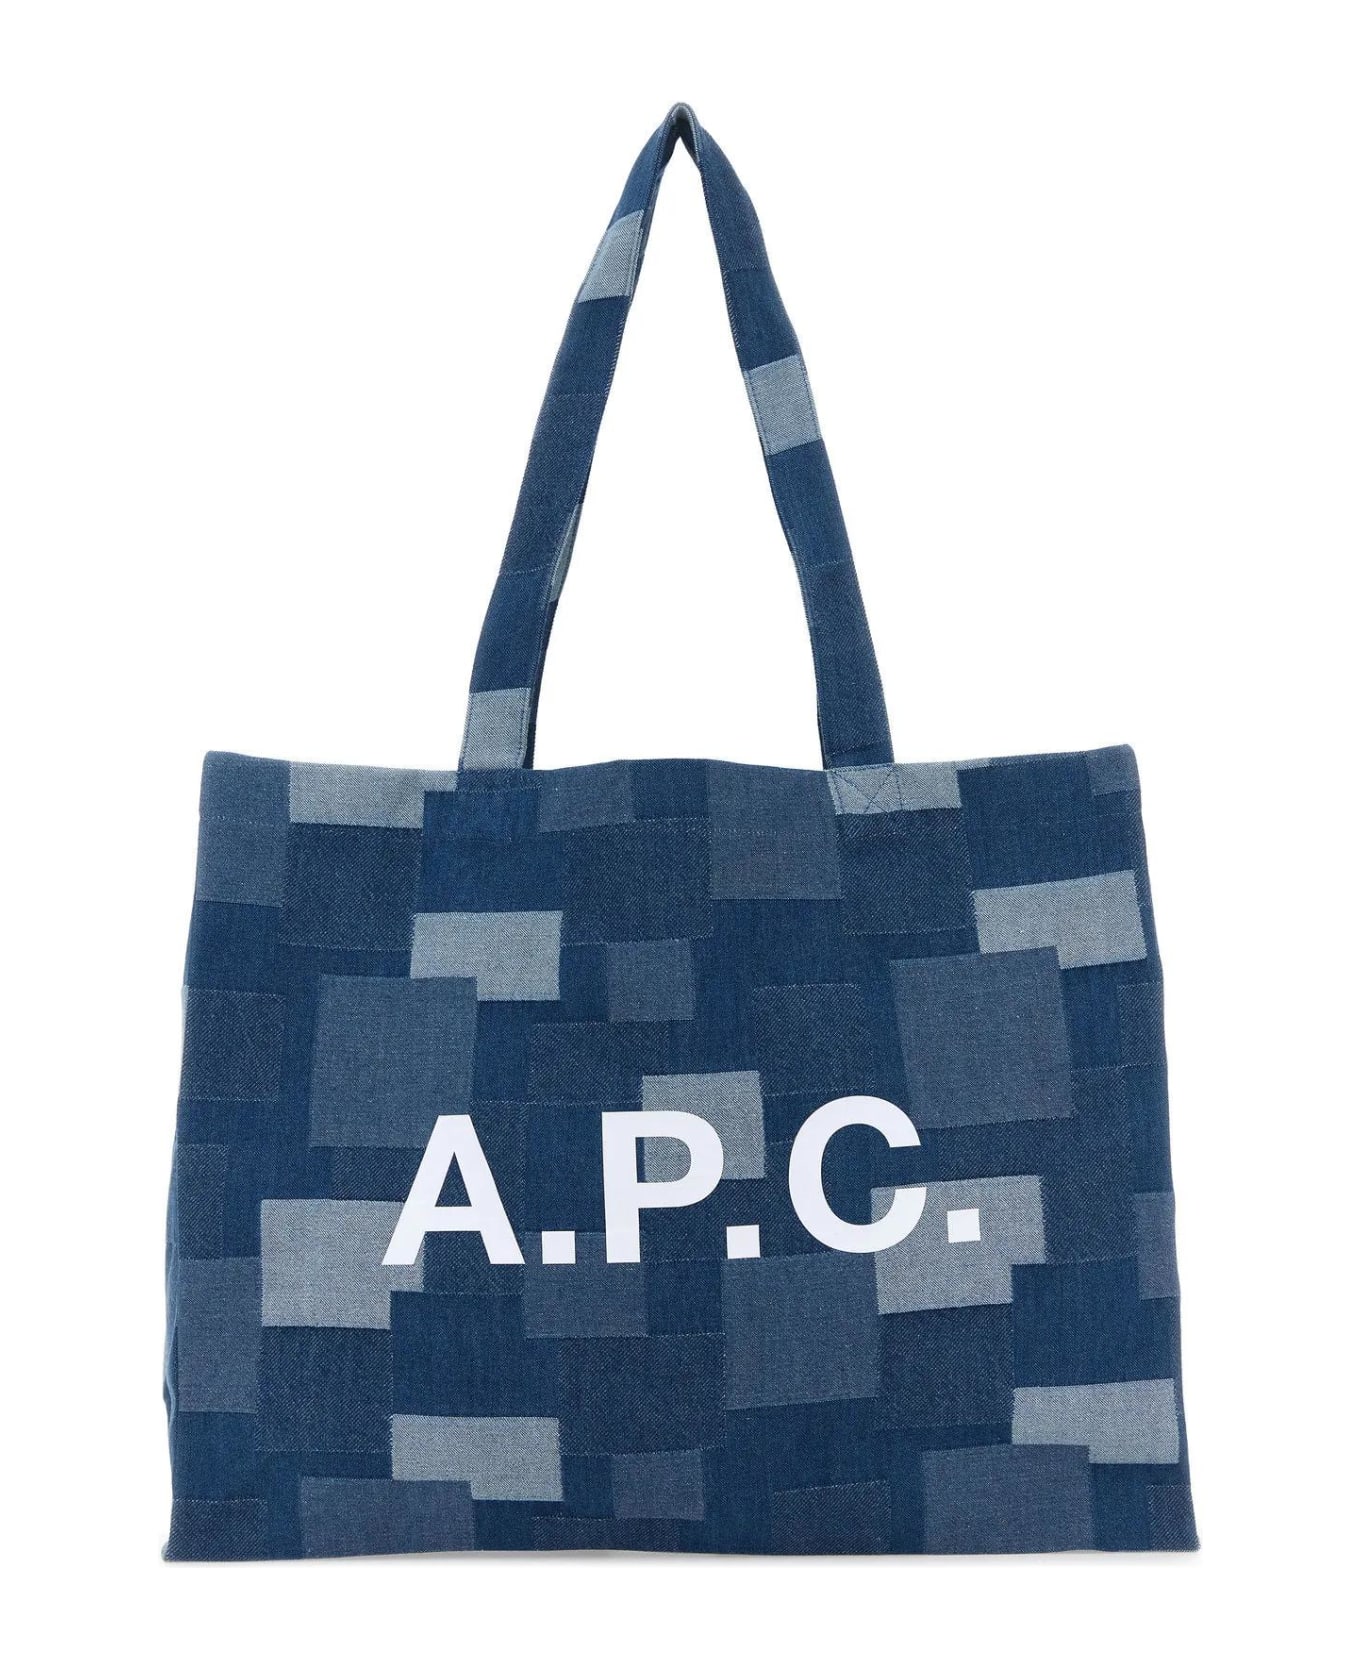 A.P.C. Diane Shopping Bag - Ial Indigo Delave